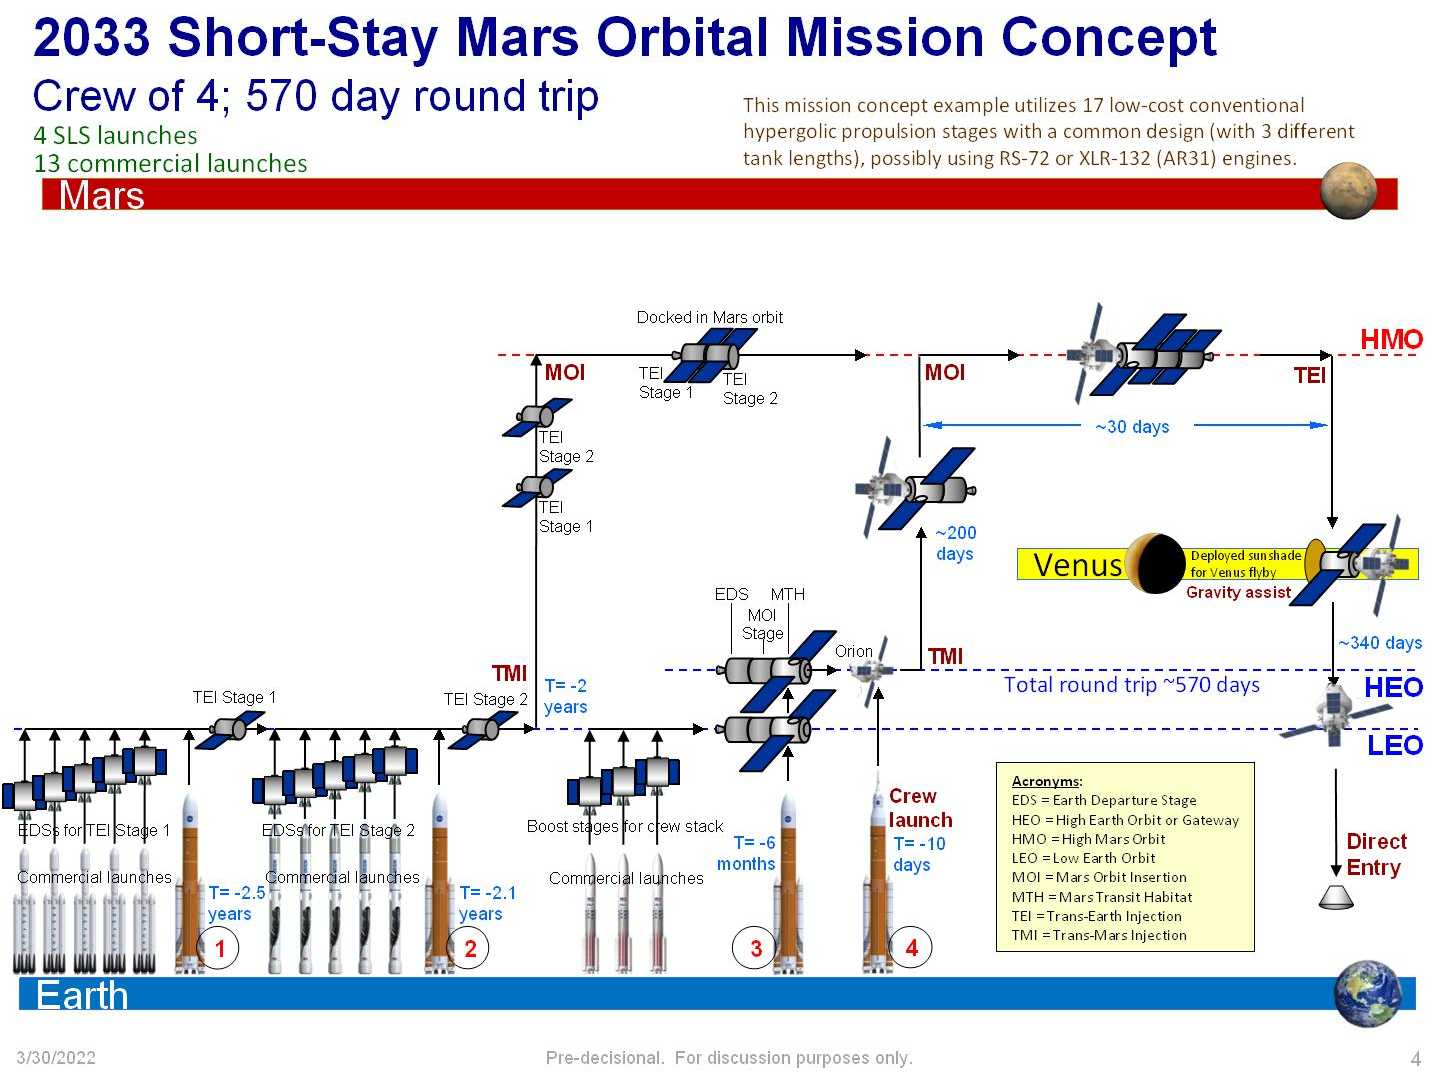 SpaceX - On to Mars-20220330-fiso-2033-mars-orbital-mission